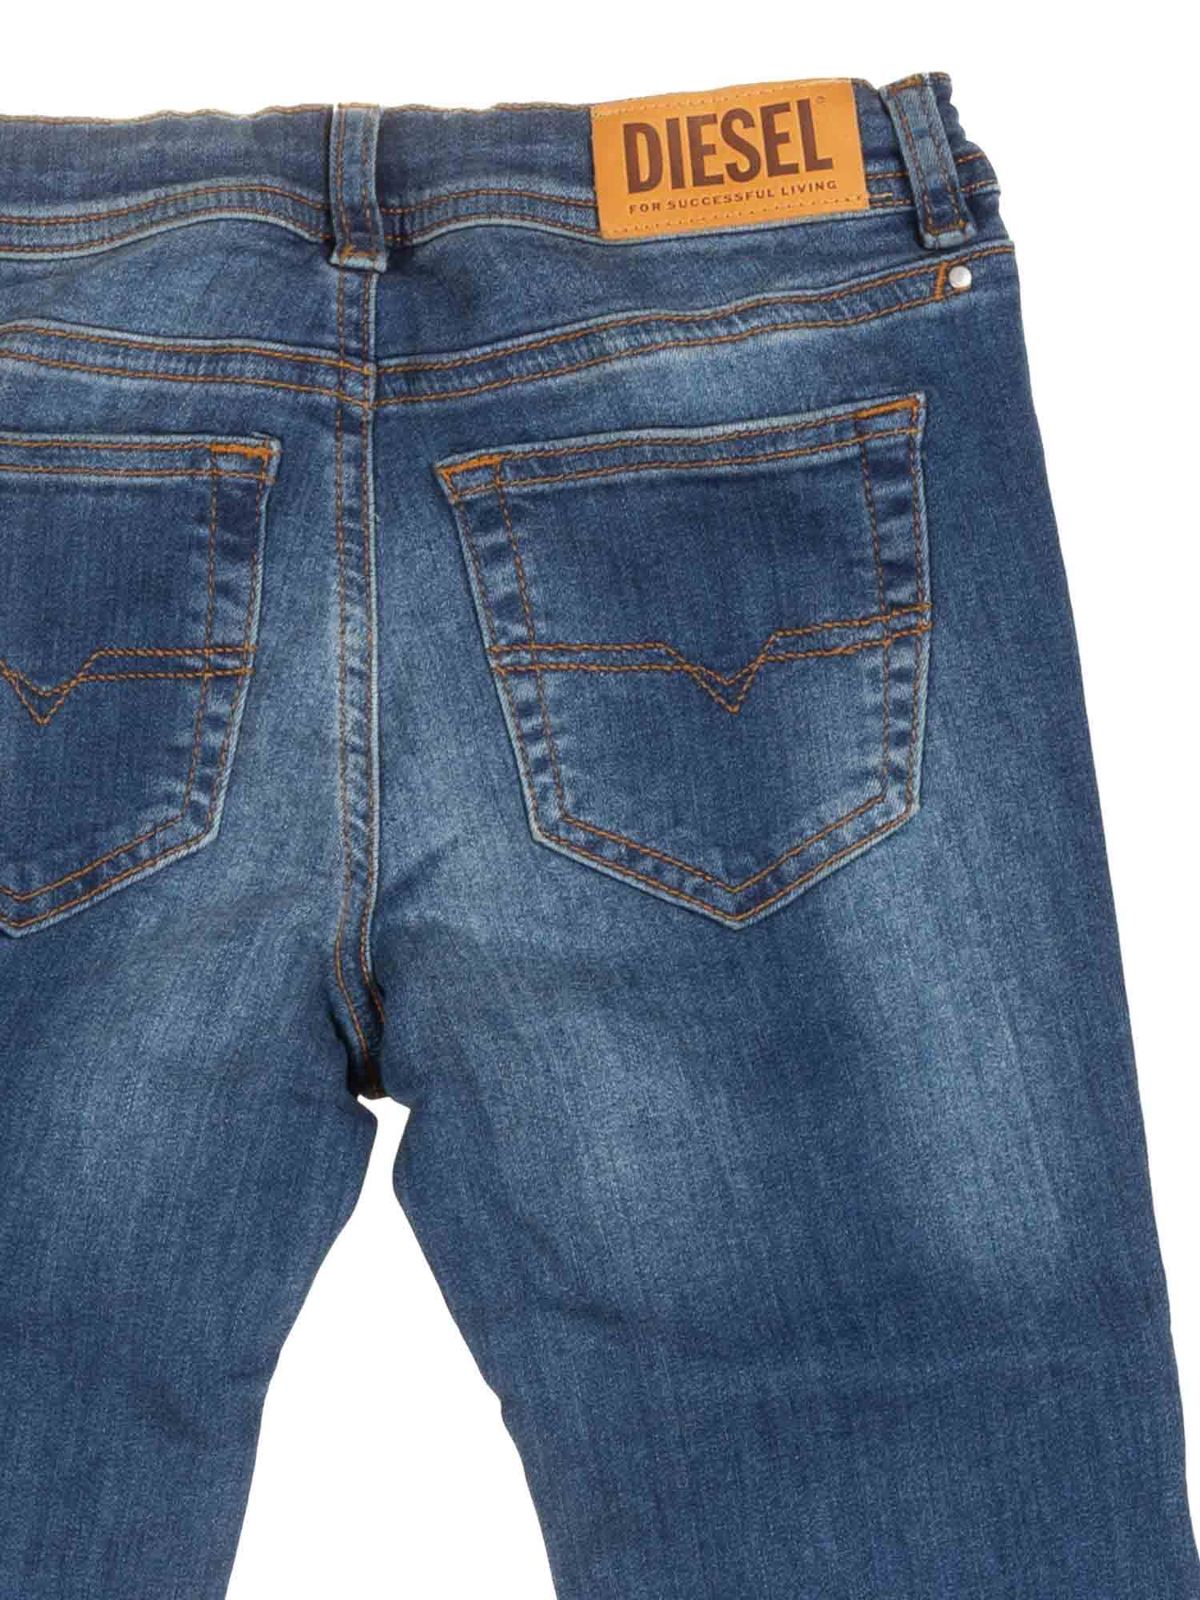 Especificado tráfico haga turismo Jeans Diesel - Vaqueros - Azul - 00J3S9KXB6IK01 | iKRIX tienda online